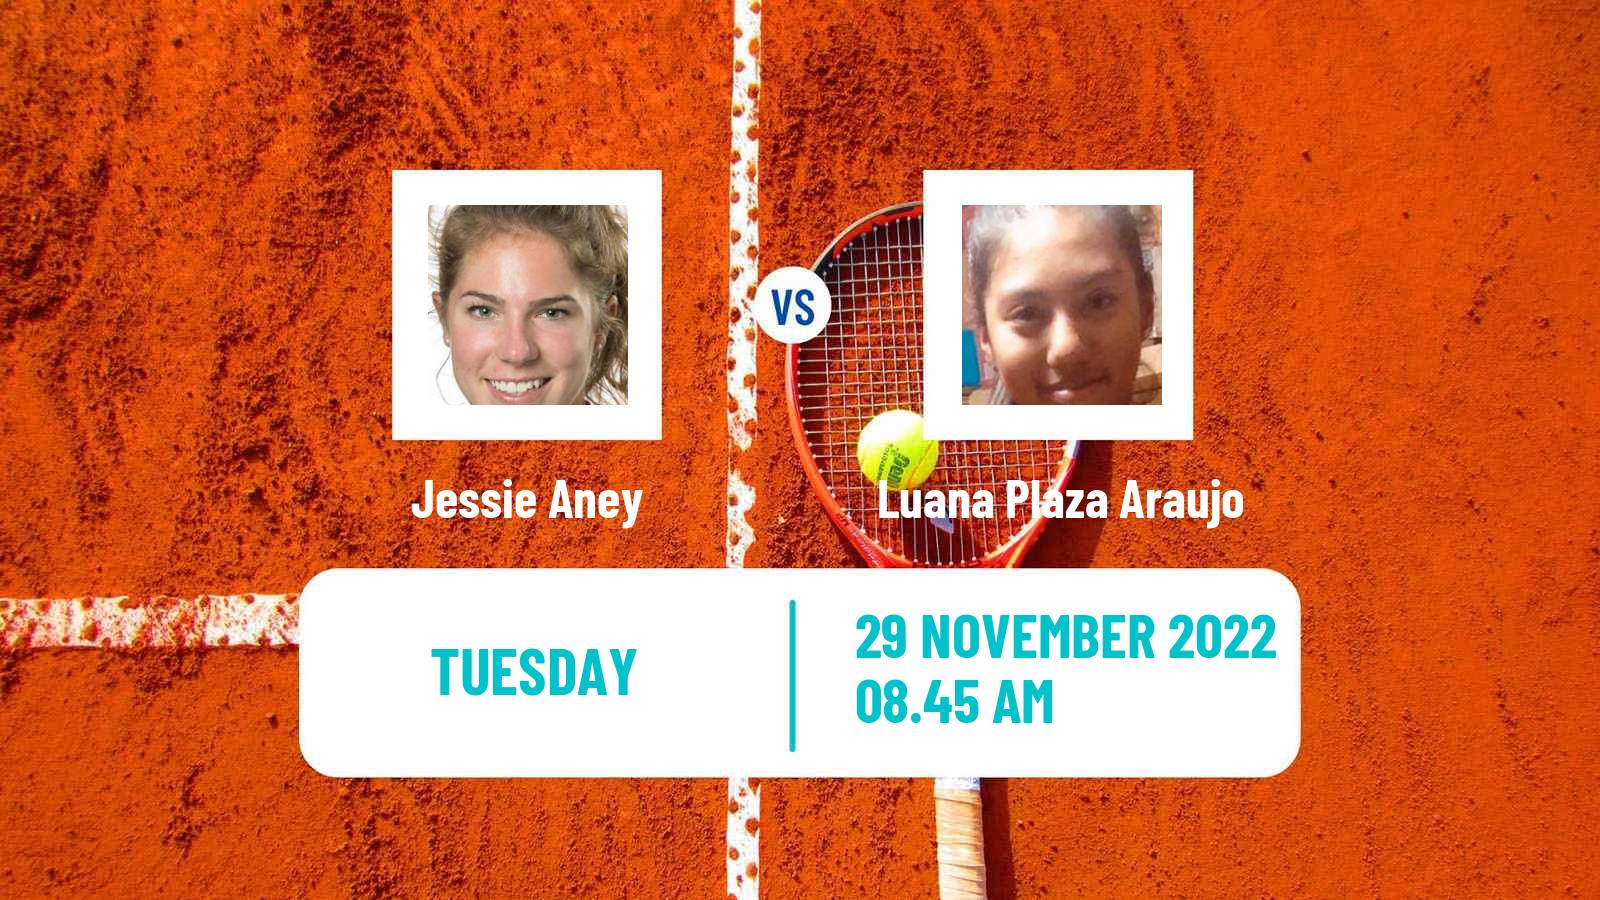 Tennis ITF Tournaments Jessie Aney - Luana Plaza Araujo